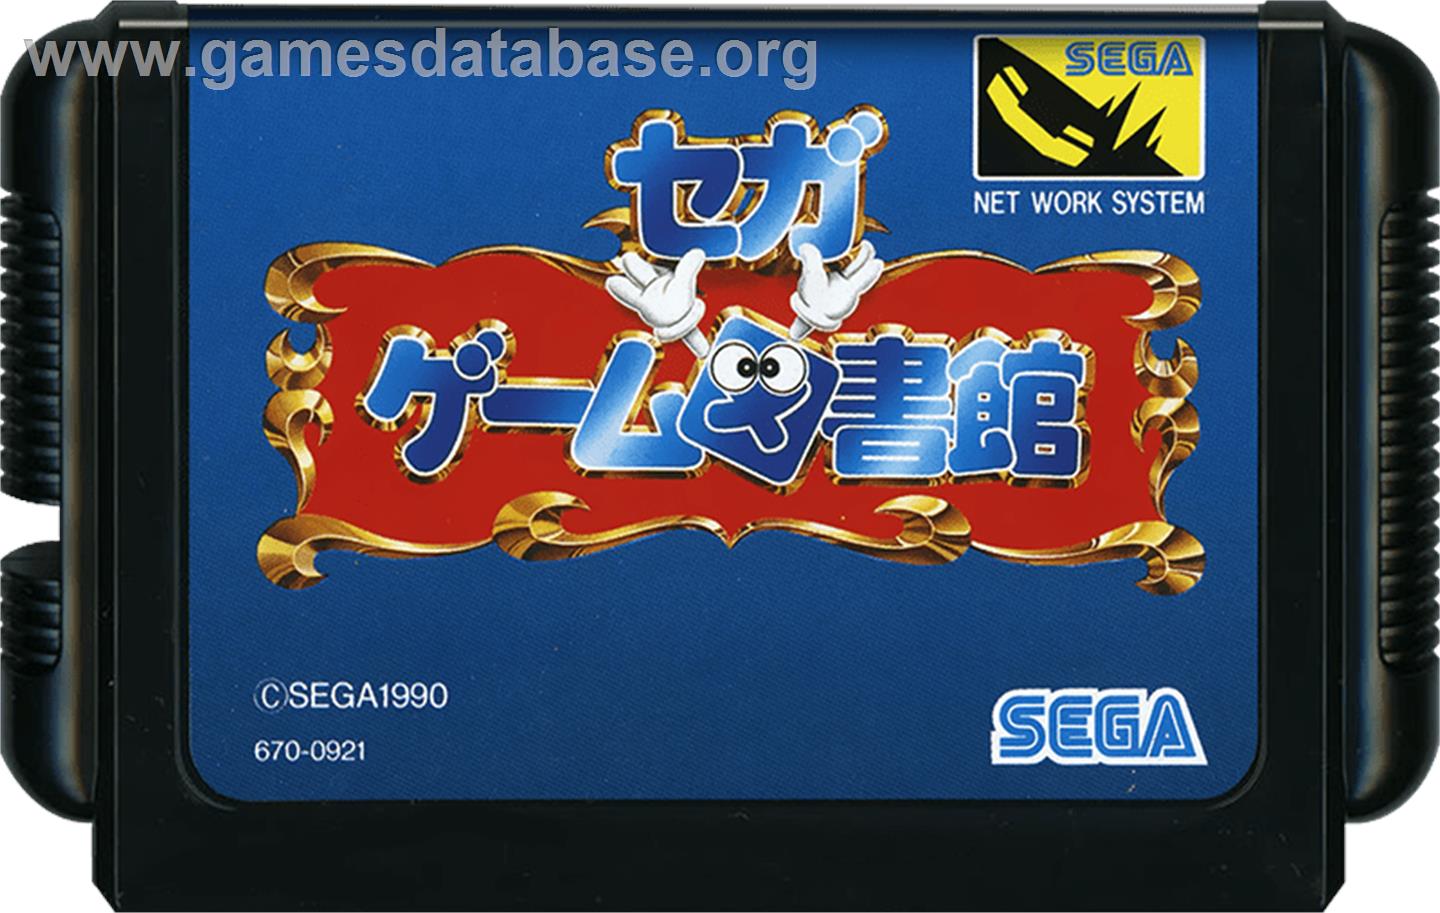 Ecco Jr. - Sega Genesis - Artwork - Cartridge